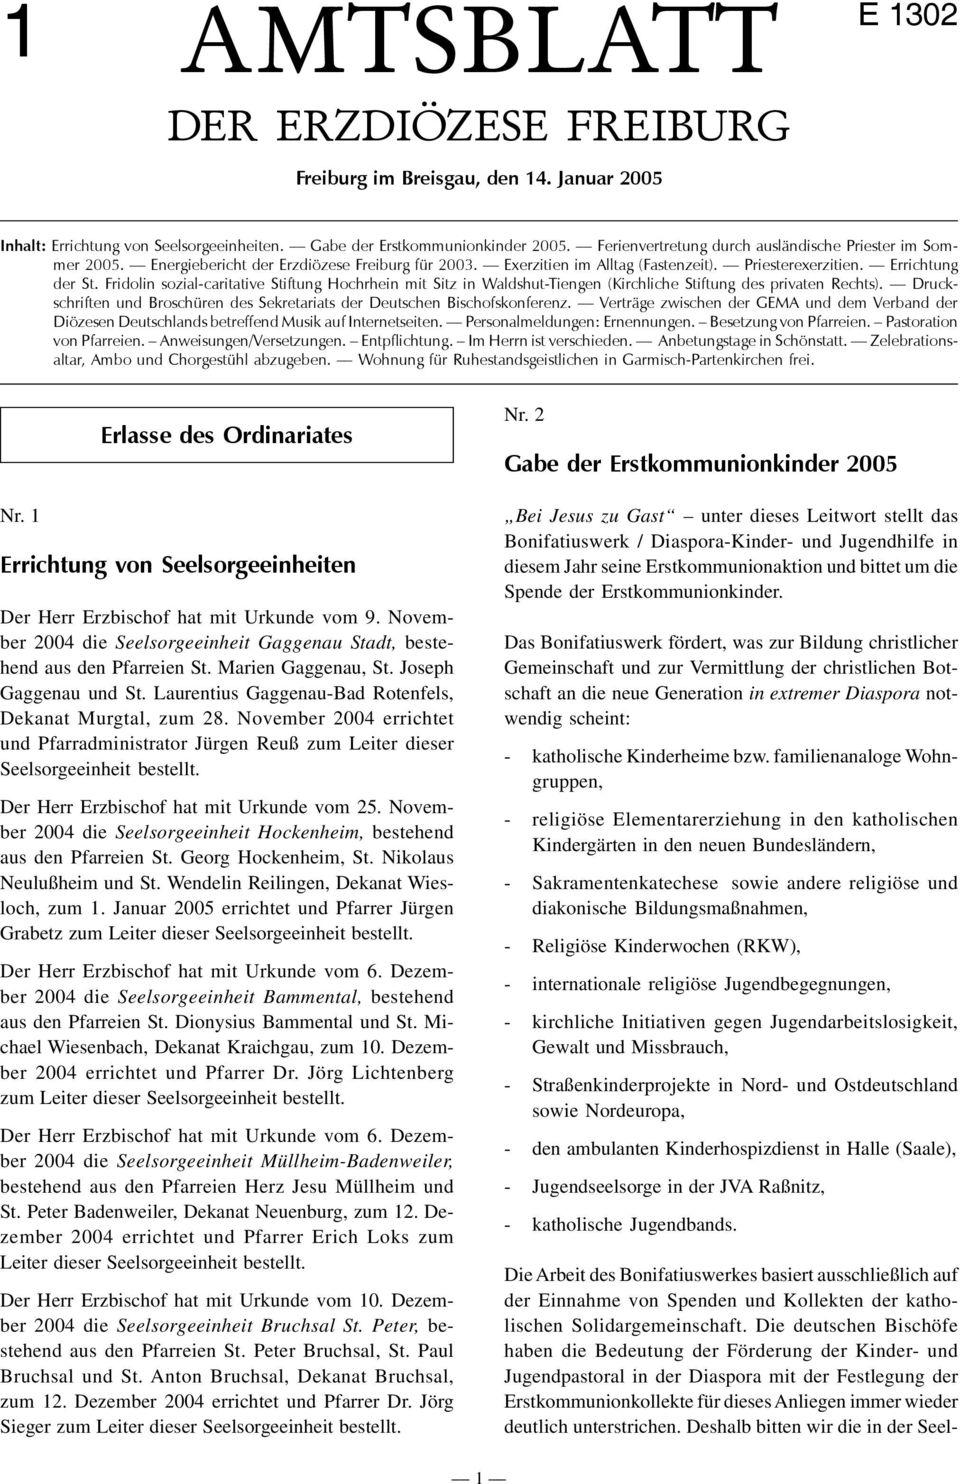 Fridolin sozial-caritative Stiftung Hochrhein mit Sitz in Waldshut-Tiengen (Kirchliche Stiftung des privaten Rechts). Druckschriften und Broschüren des Sekretariats der Deutschen Bischofskonferenz.